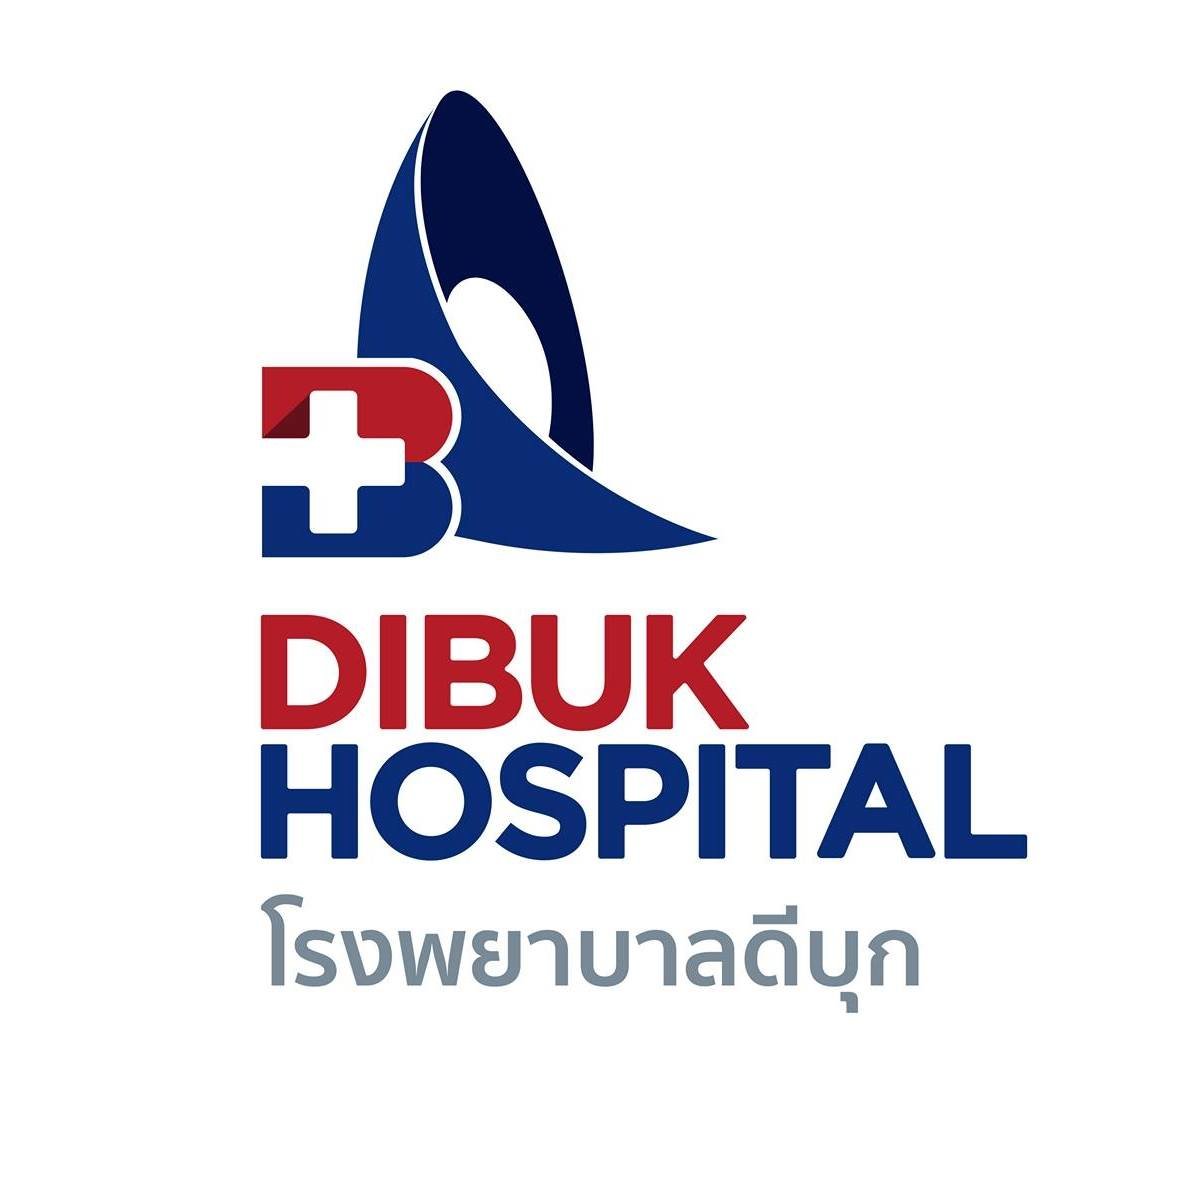 โรงพยาบาลดีบุก - amazingthailand.org